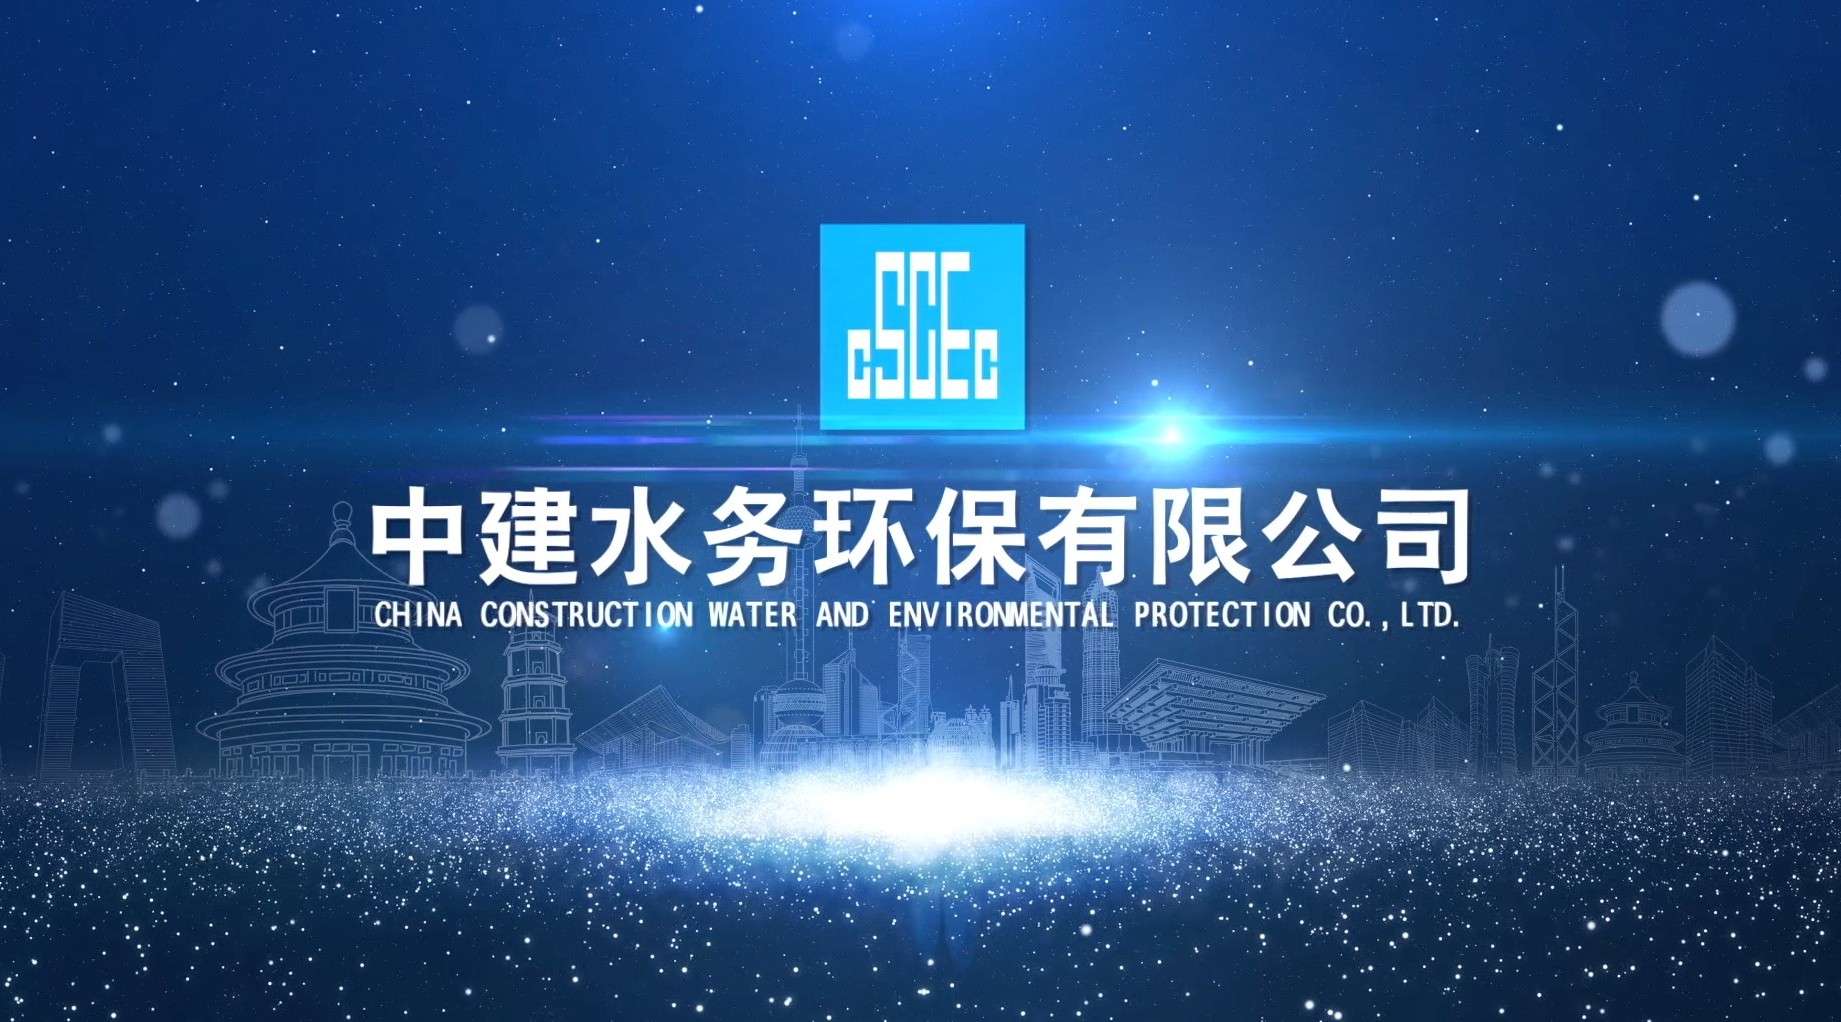 中建水务环保有限公司 宣传片